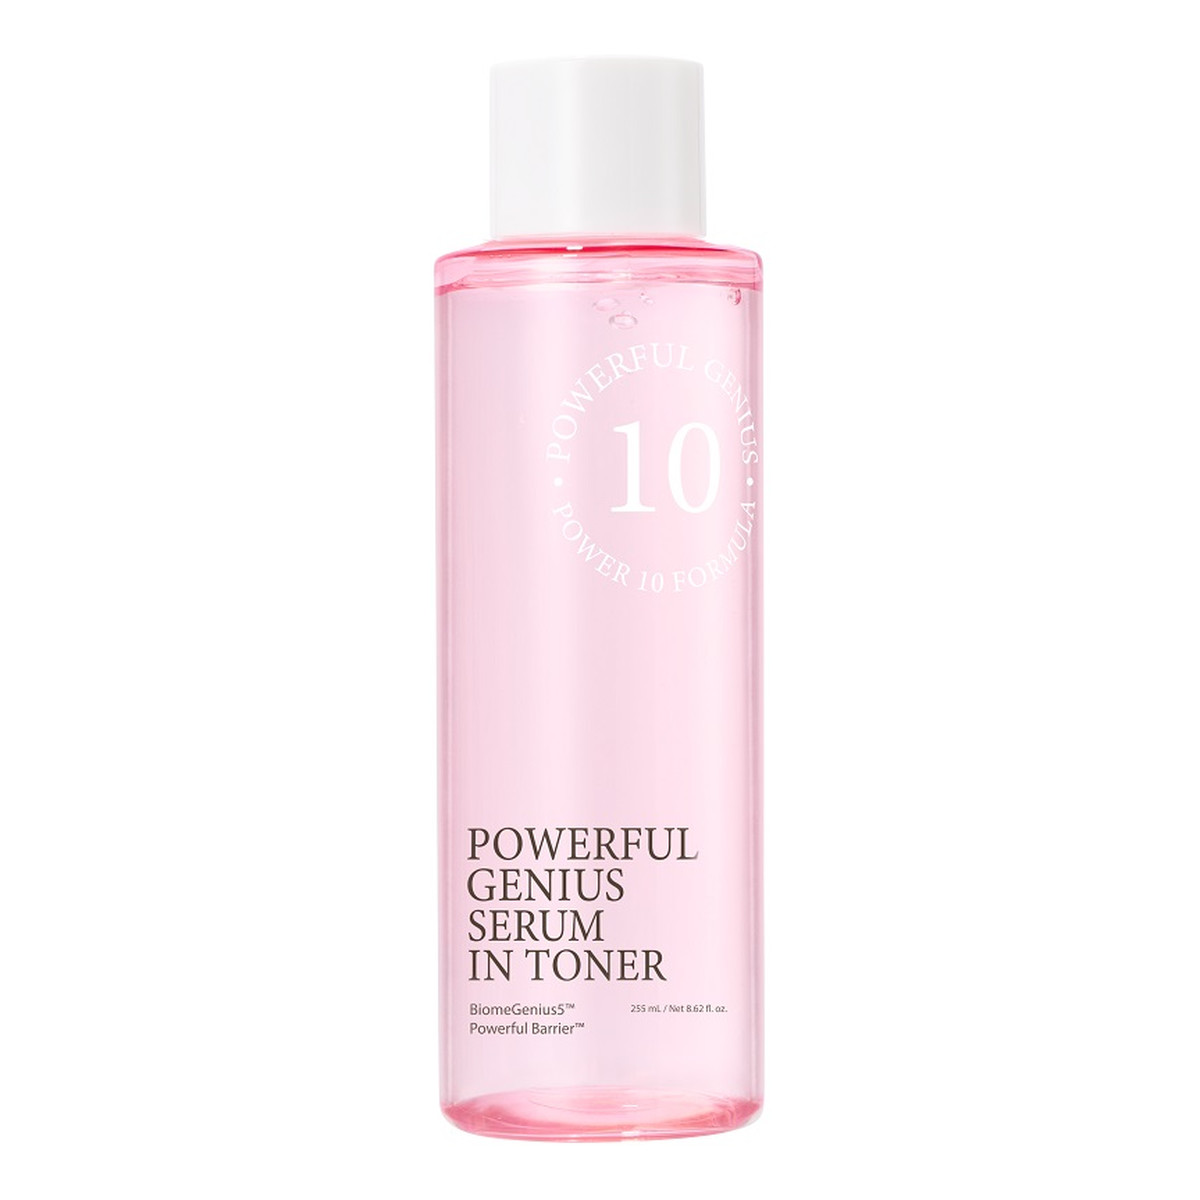 It's Skin Power 10 formula powerful genius serum in toner odmładzający tonik do twarzy 255ml